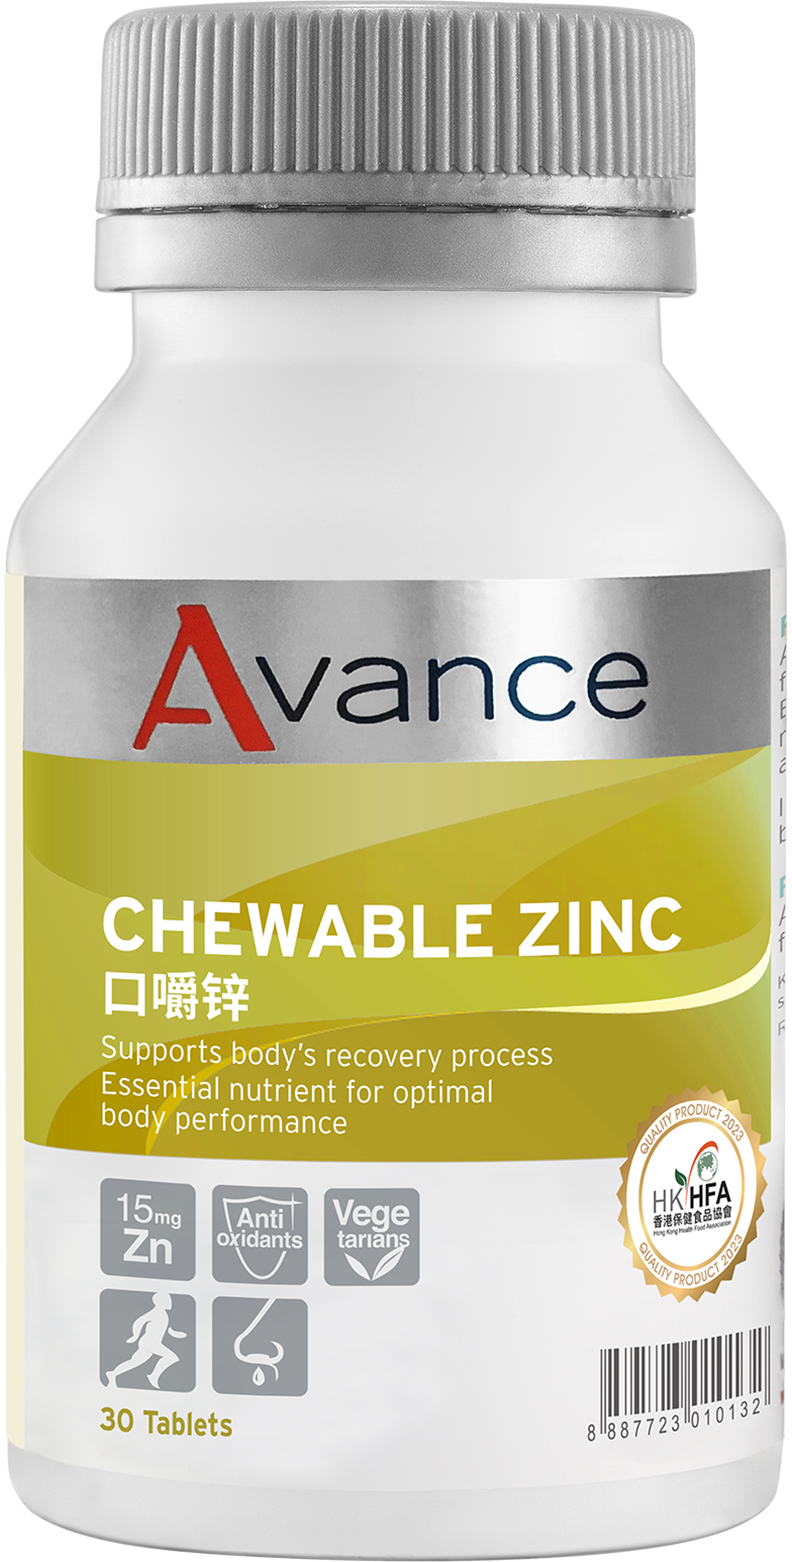 Chewable Zinc